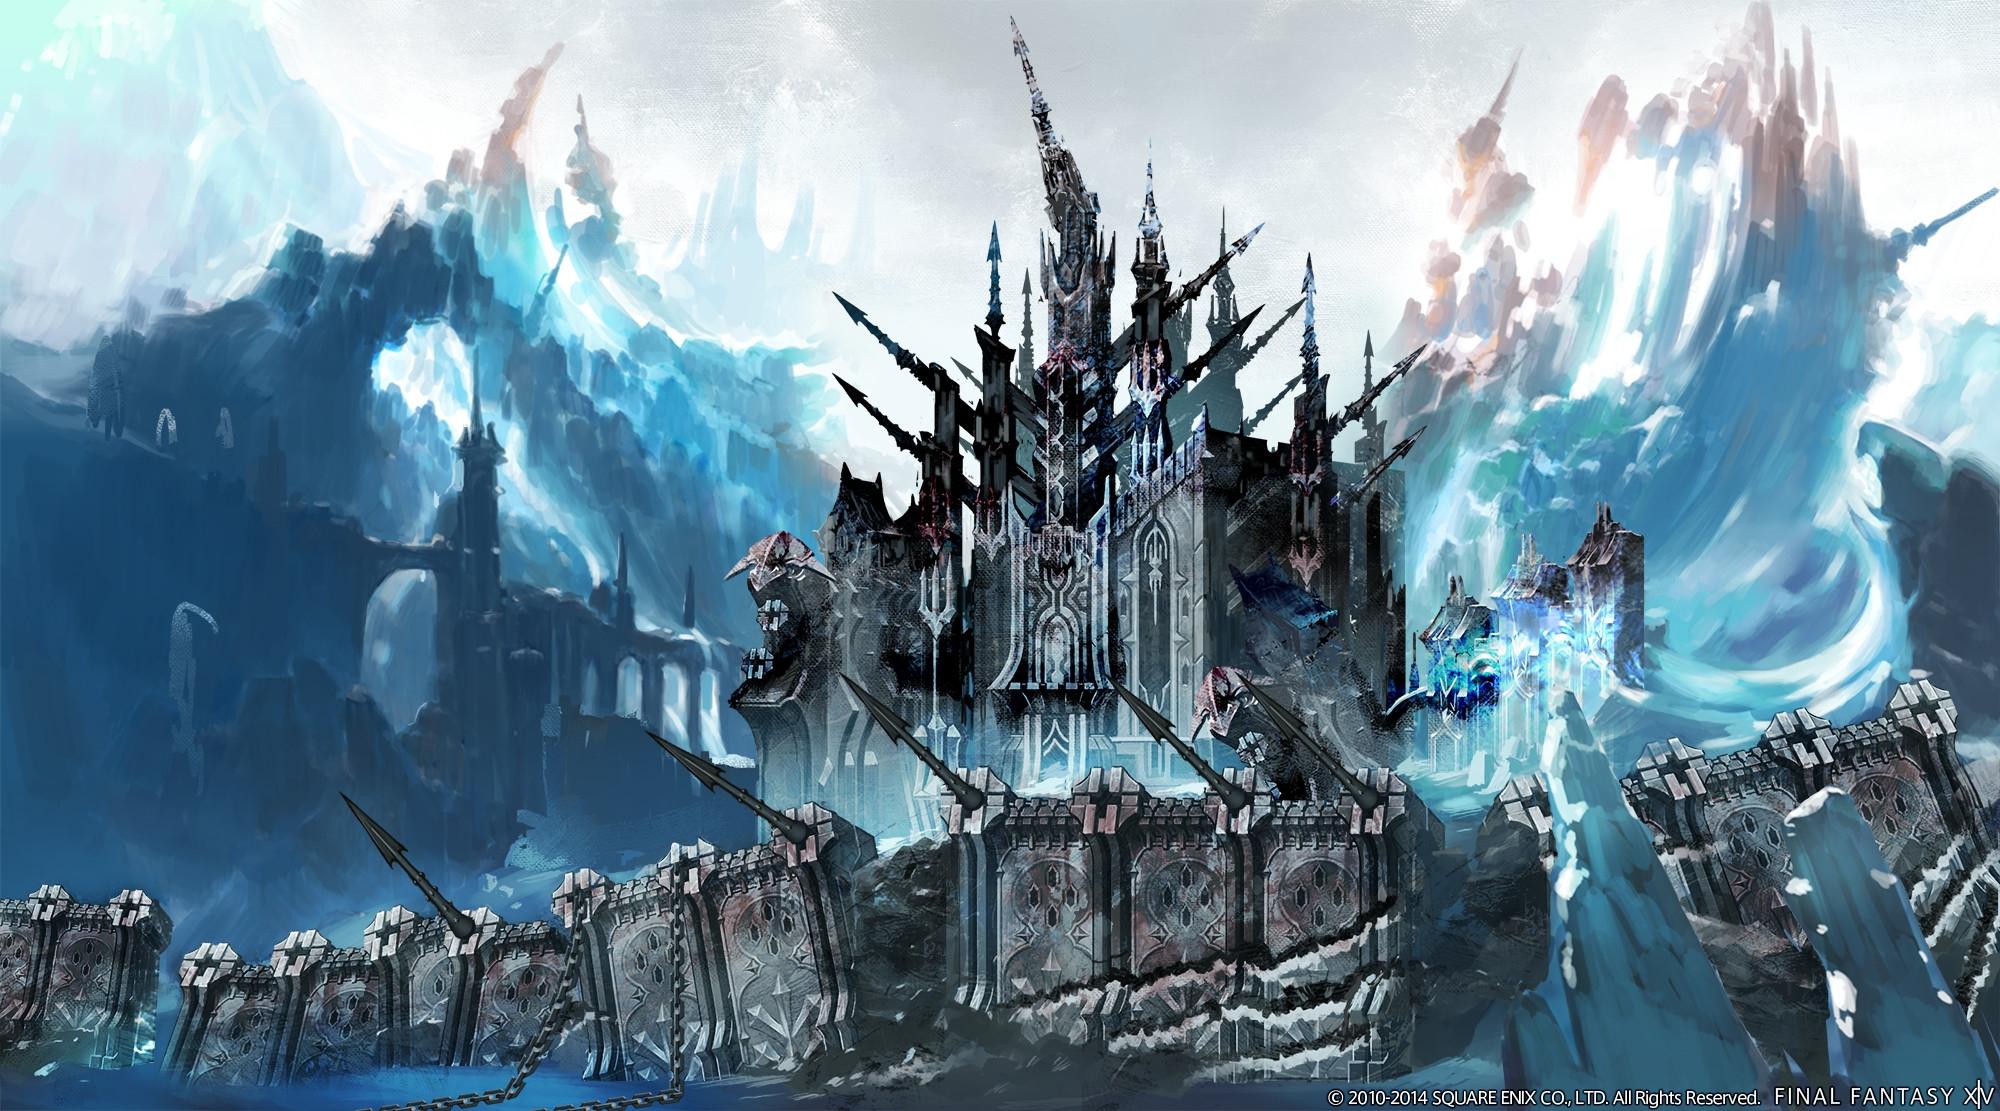 2000 x 1111 · jpeg - Final Fantasy XIV: A Realm Reborn HD Wallpaper | Background Image ...